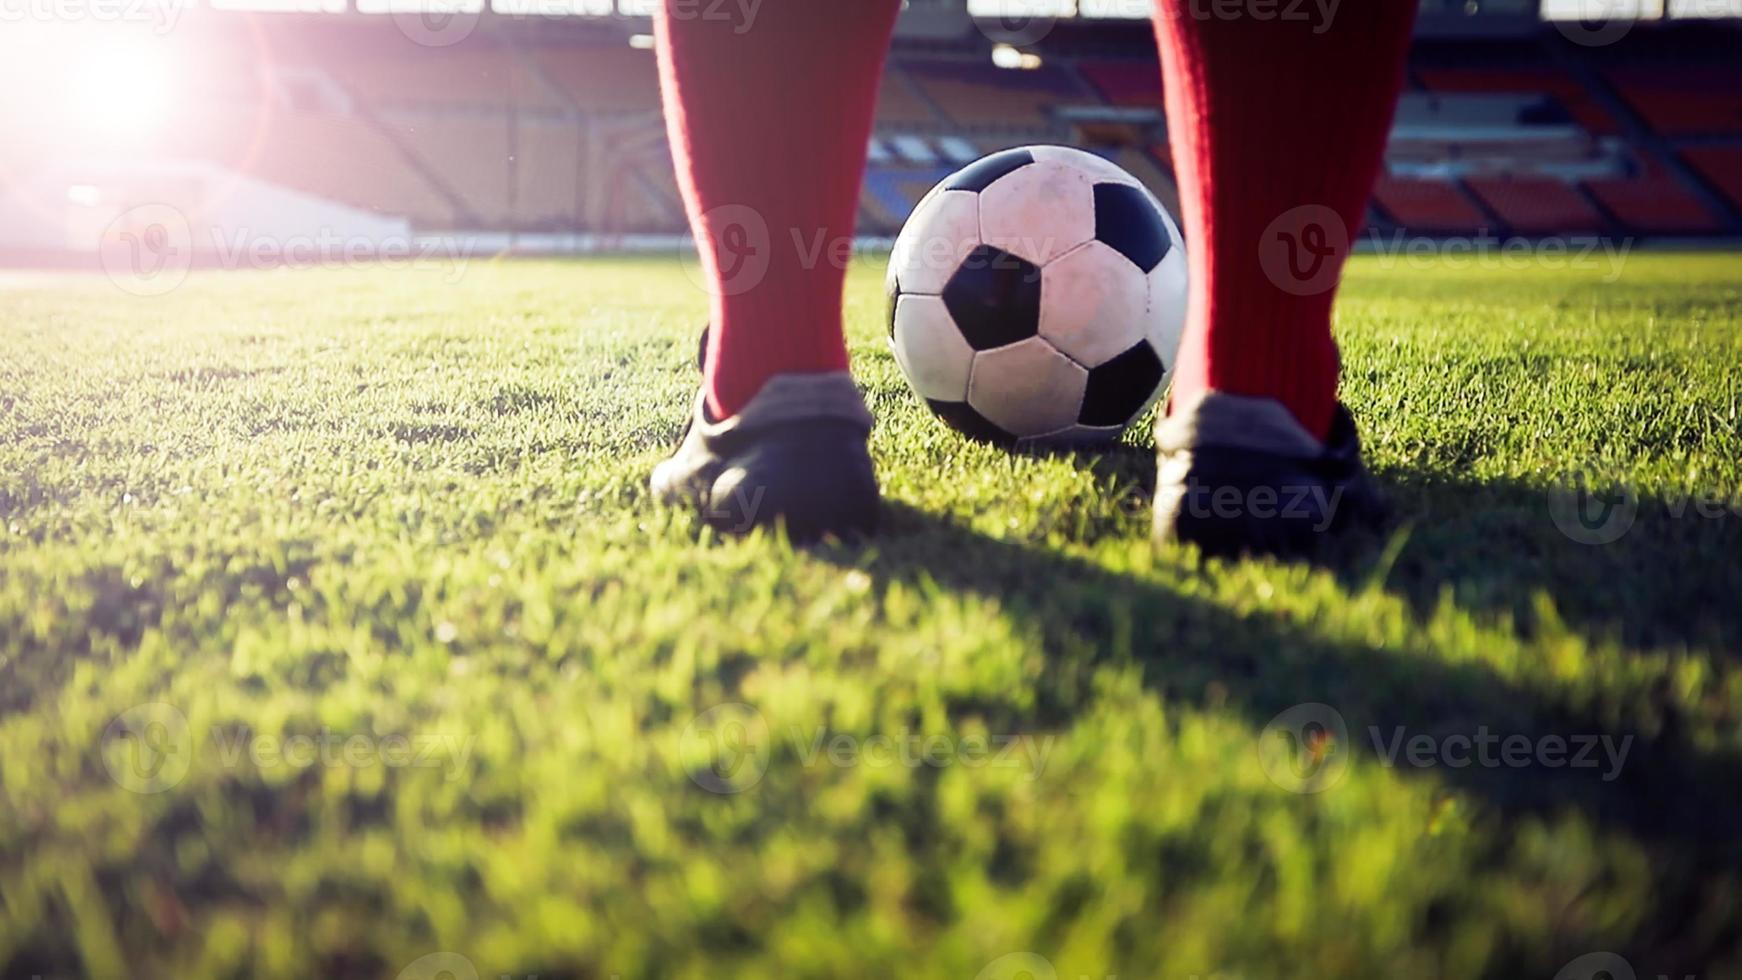 fútbol o jugador de fútbol de pie con la pelota en el campo para patear la pelota de fútbol en el estadio de fútbol foto